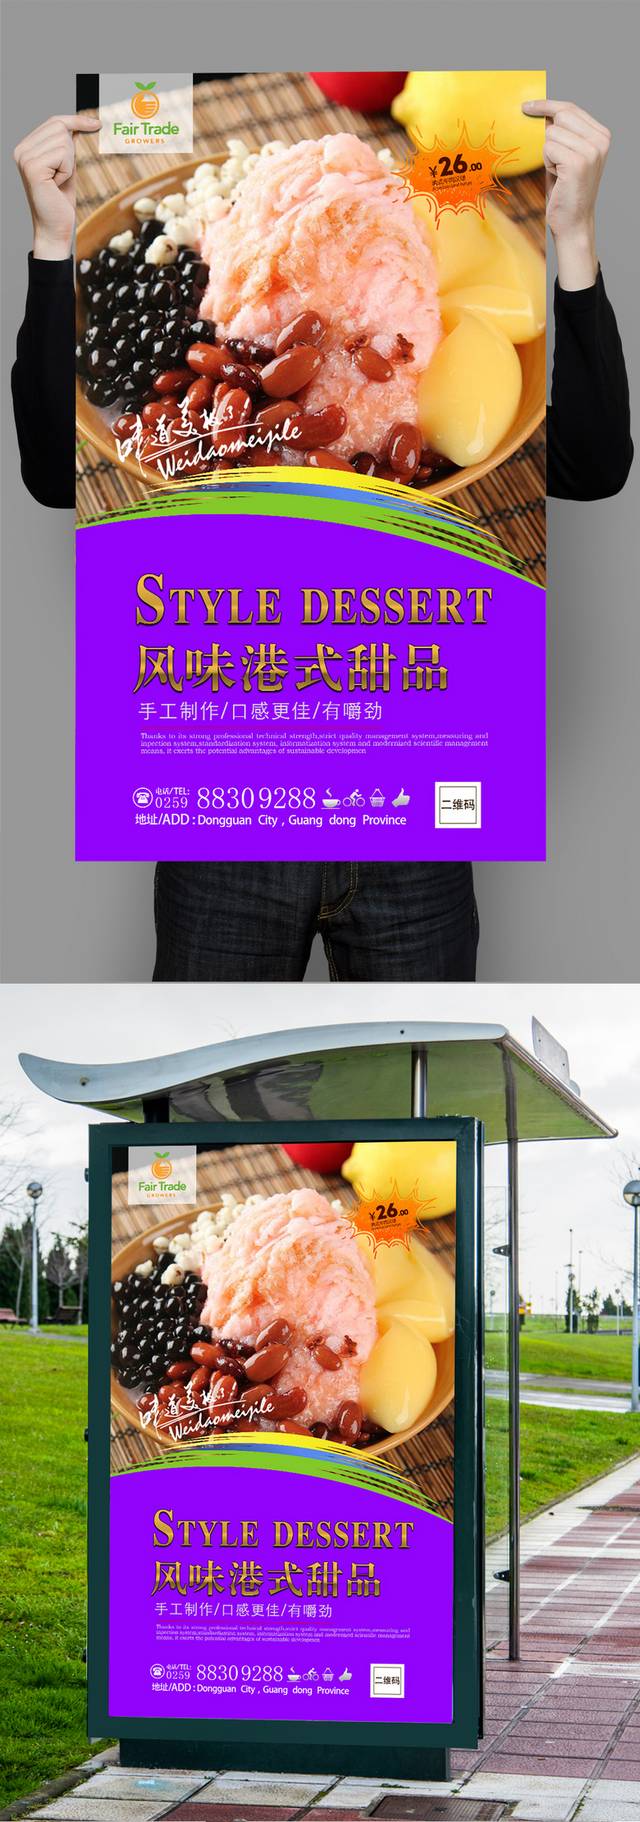 高清美味港式甜品宣传海报设计